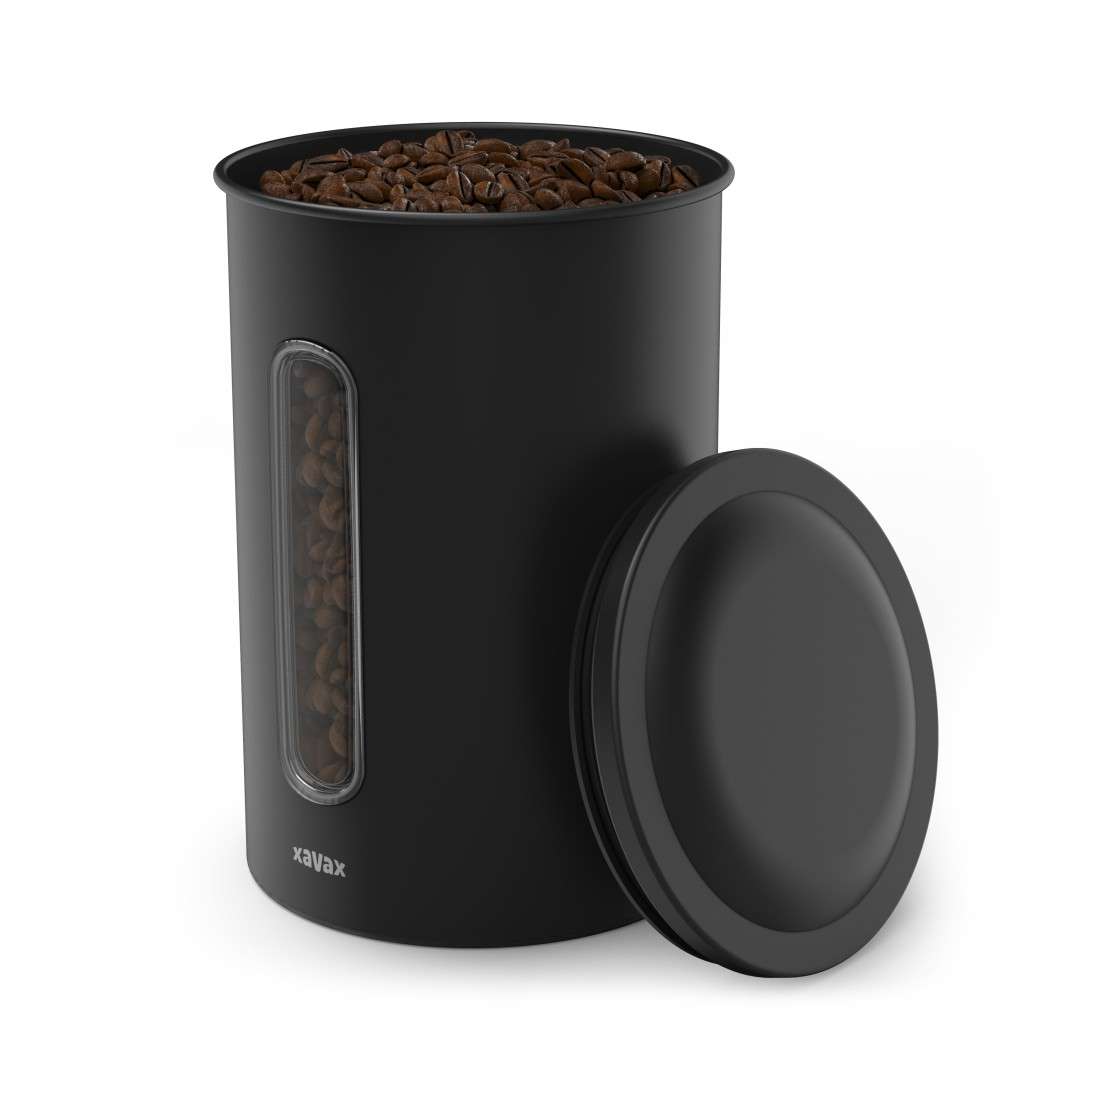 Kaffeedose für 1,3kg Bohnen o. 1,5kg Pulver, luftdicht, aromadicht, Schwarz